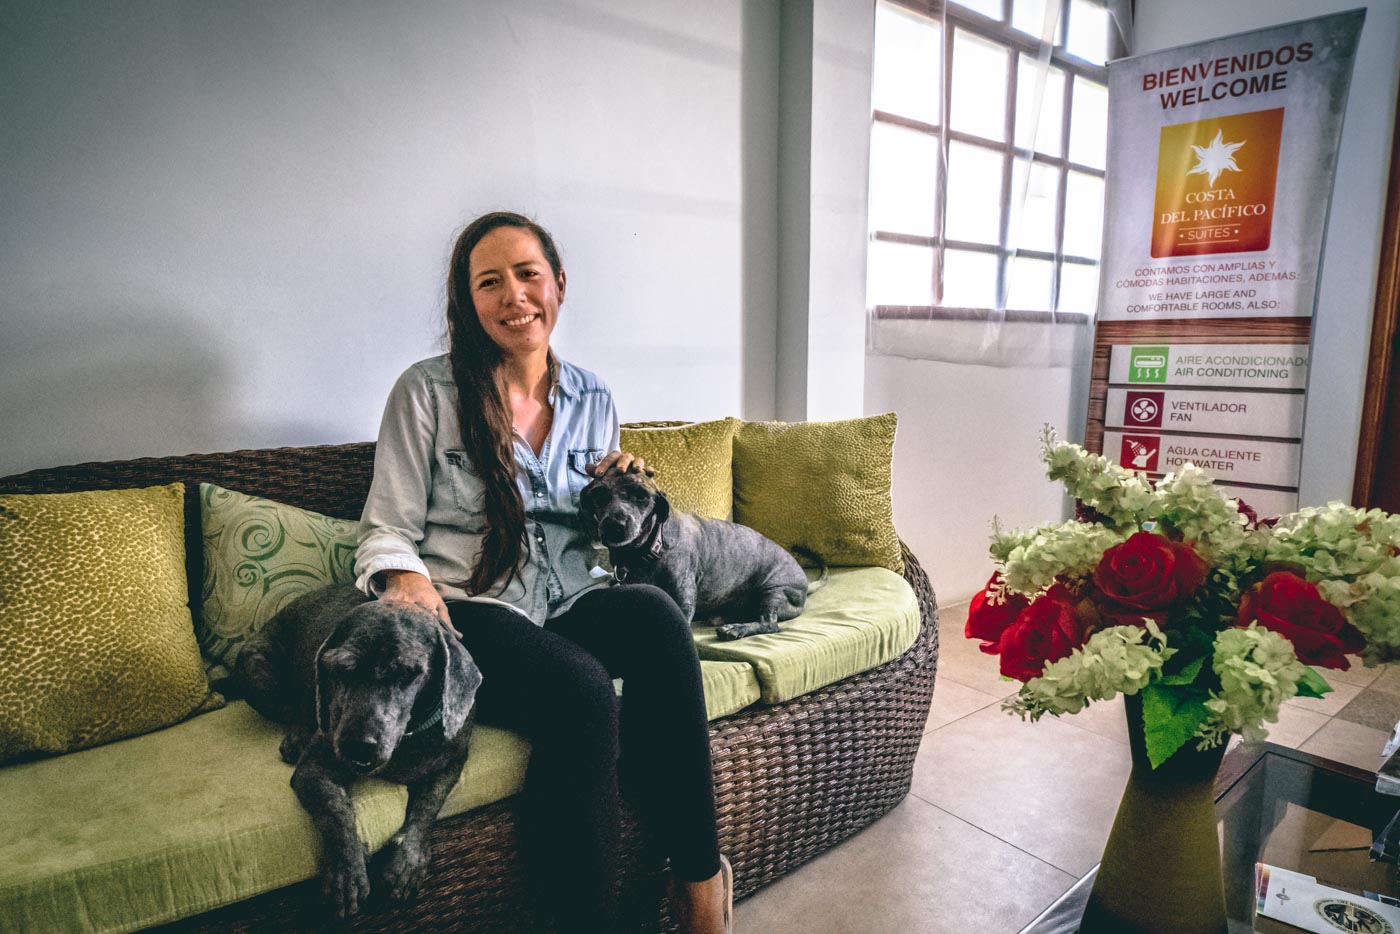 酒店主人索尼娅和她的两条狗住在科斯塔·太平洋菲科酒店